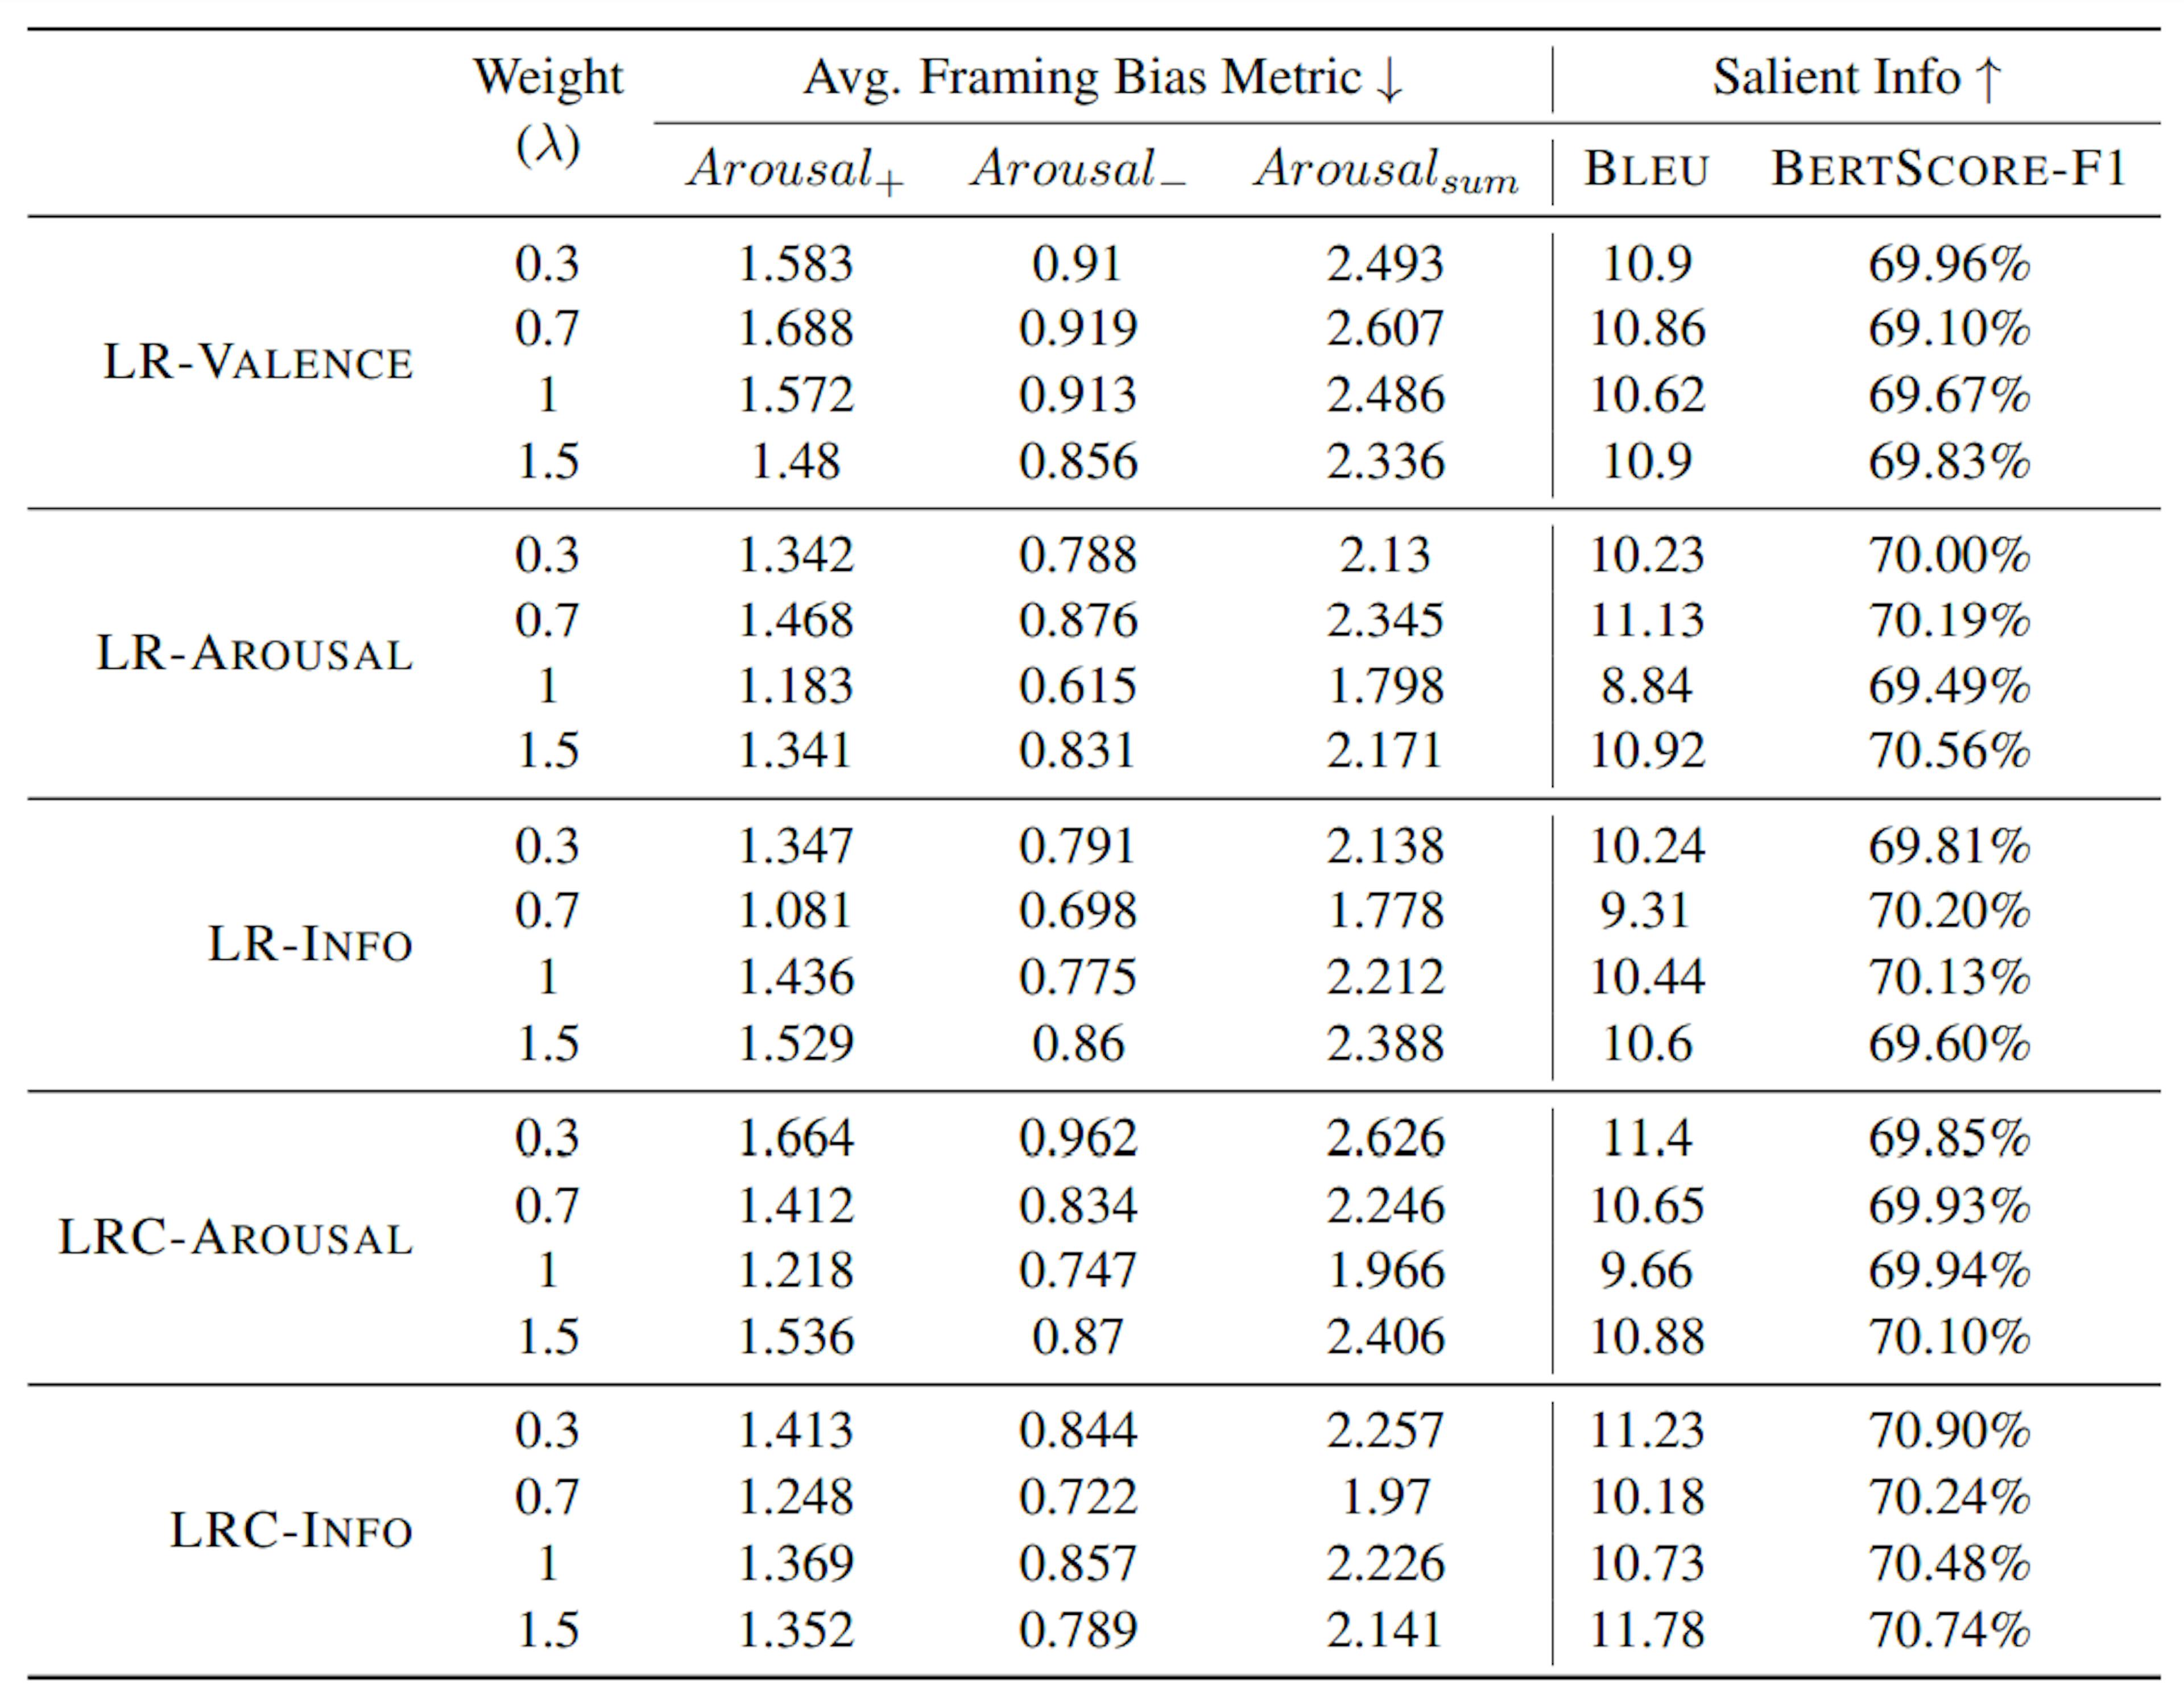 Tabela 5: Resultados experimentais para nossos modelos com proposta de perda de minimização de polaridade, LR-VALENCE, LRAROUSAL, LR-INFO, LRC-AROUSAL, LRC-INFO, com pesos variados (λ). Para a métrica de viés de enquadramento, o número menor é melhor (↓). Para outras pontuações, quanto maior o número melhor (↑). Os resultados de nossos modelos com perda de minimização de polaridade (aqueles indicados com +) são relatados com melhor λ. A exploração completa de λ está disponível no Apêndice e na Figura 2